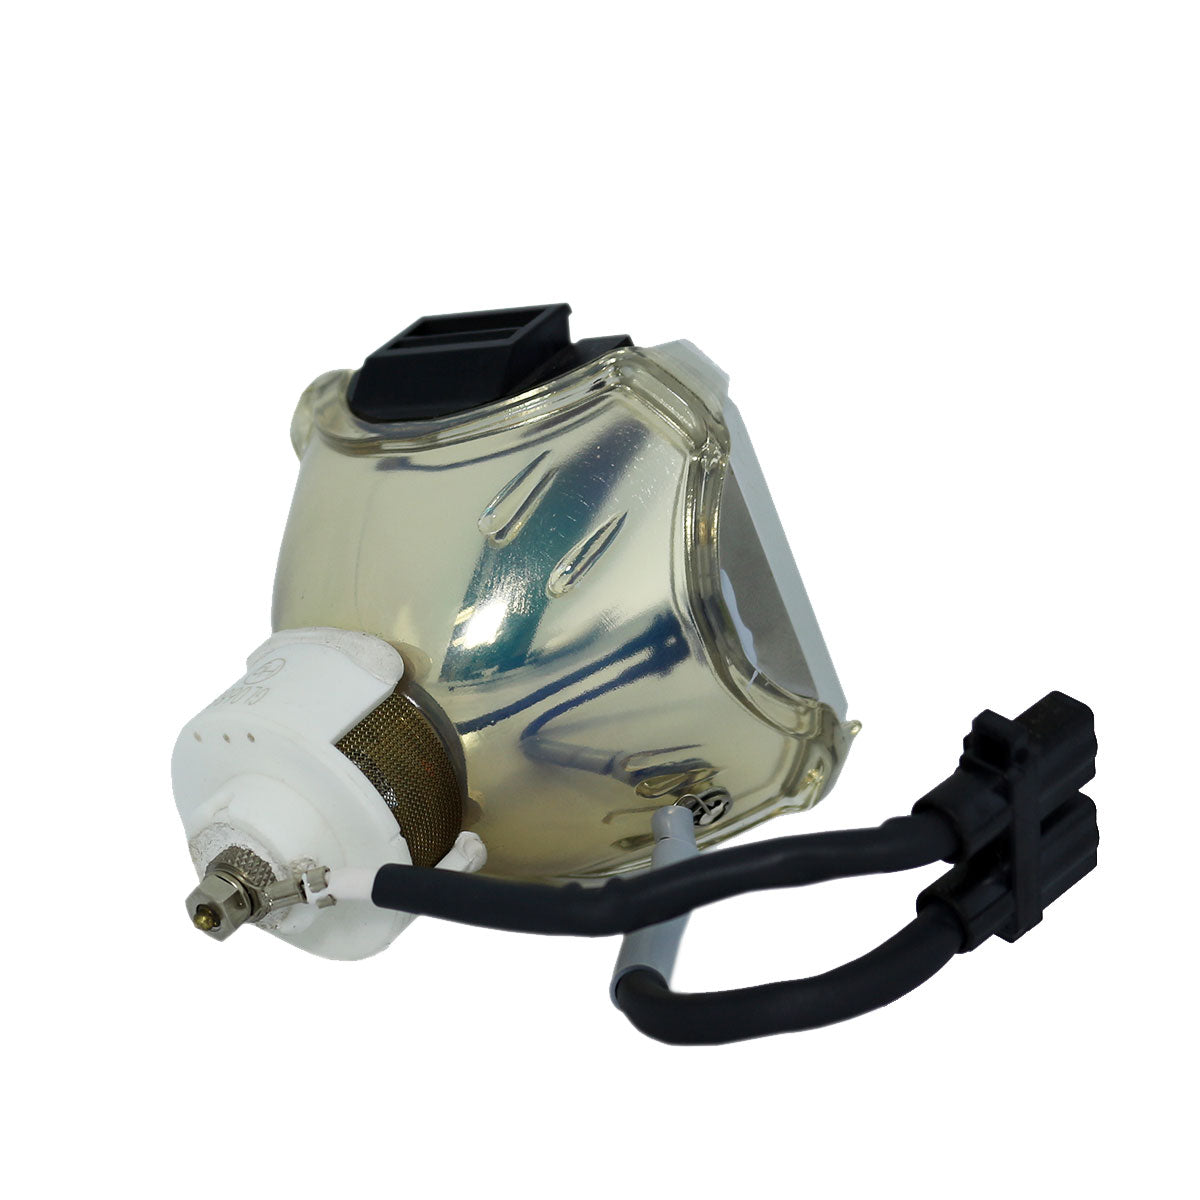 3M 78-6969-9718-4 Ushio Projector Bare Lamp